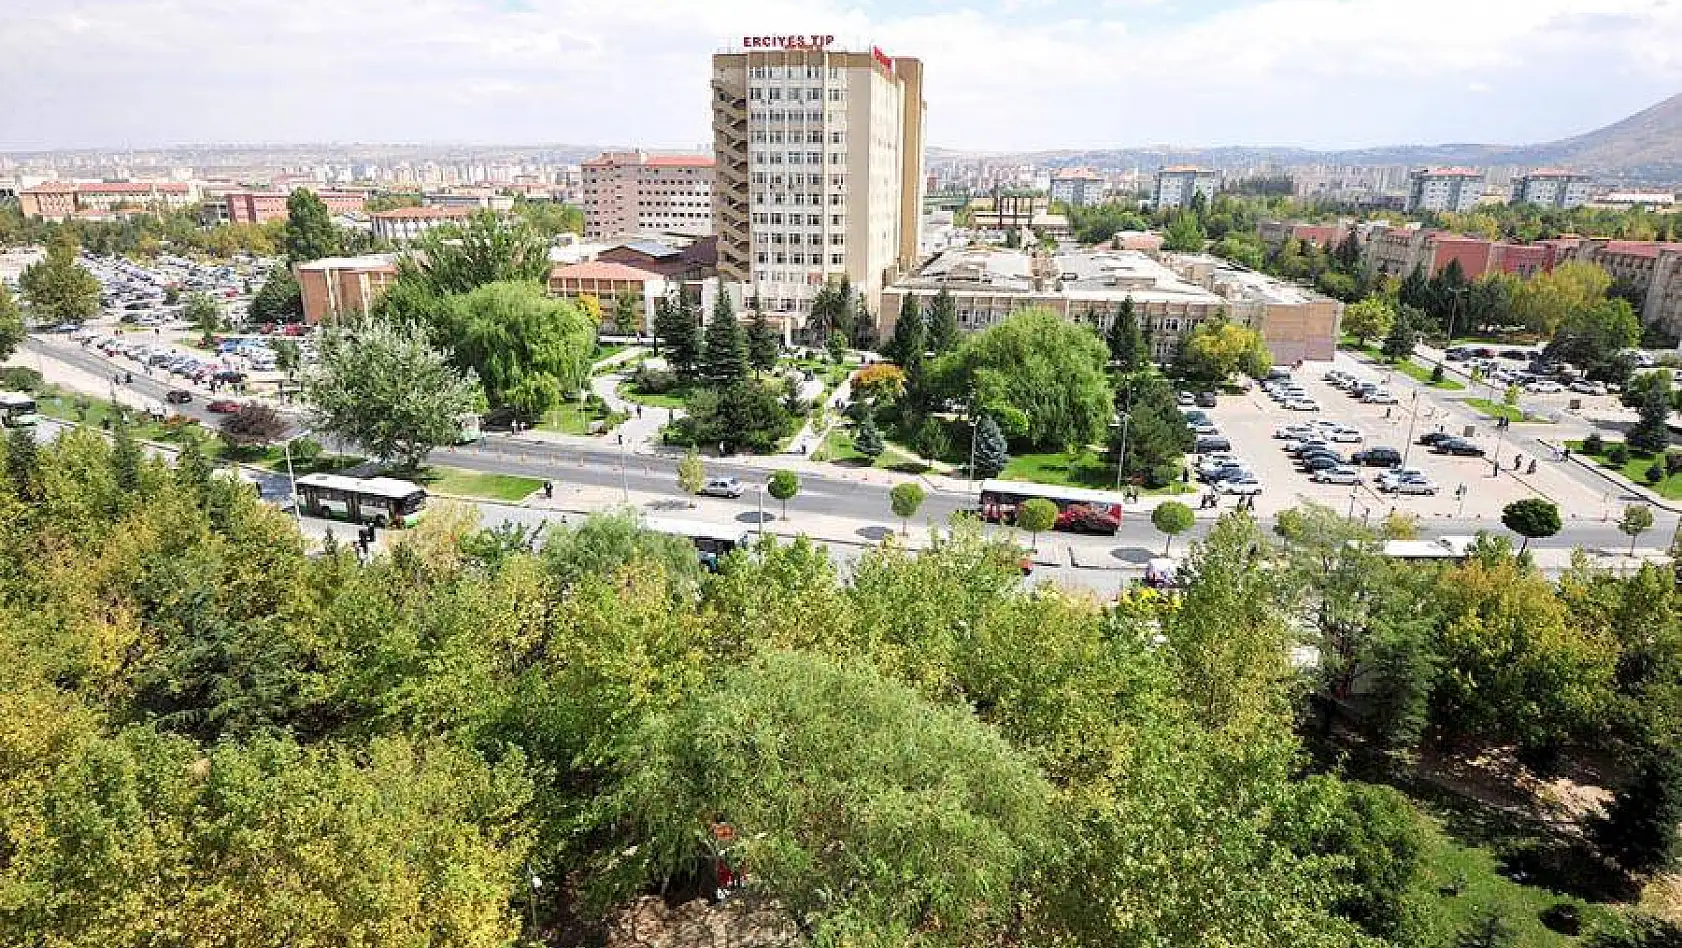   Erciyes Üniversitesi'nde Koronavirüs alarmı: Yoğun Bakım Hemşiresi Aranıyor, Bazı üniteler yoğun bakıma çevrildi!